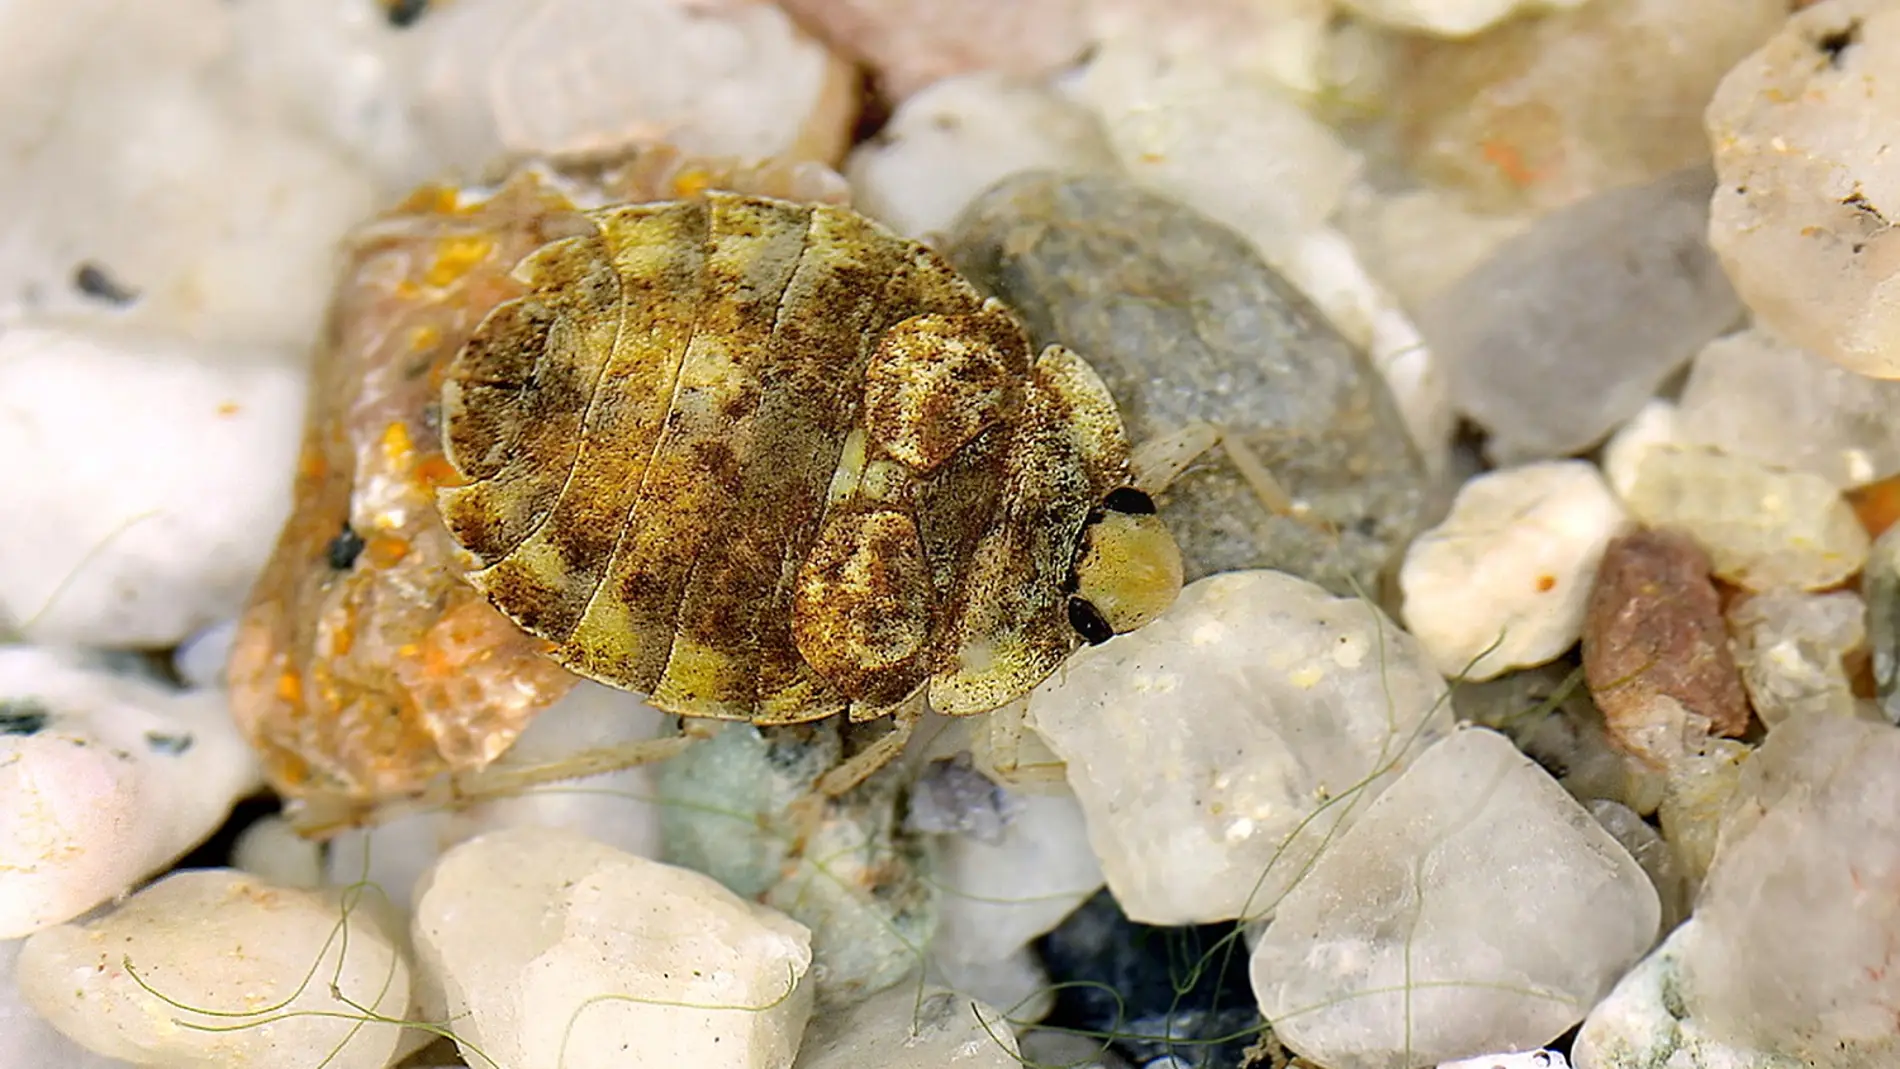 El nuevo estudio confirma la presencia de este insecto acuático en la península ibérica. Foto: Ekkerhardt Wachmann